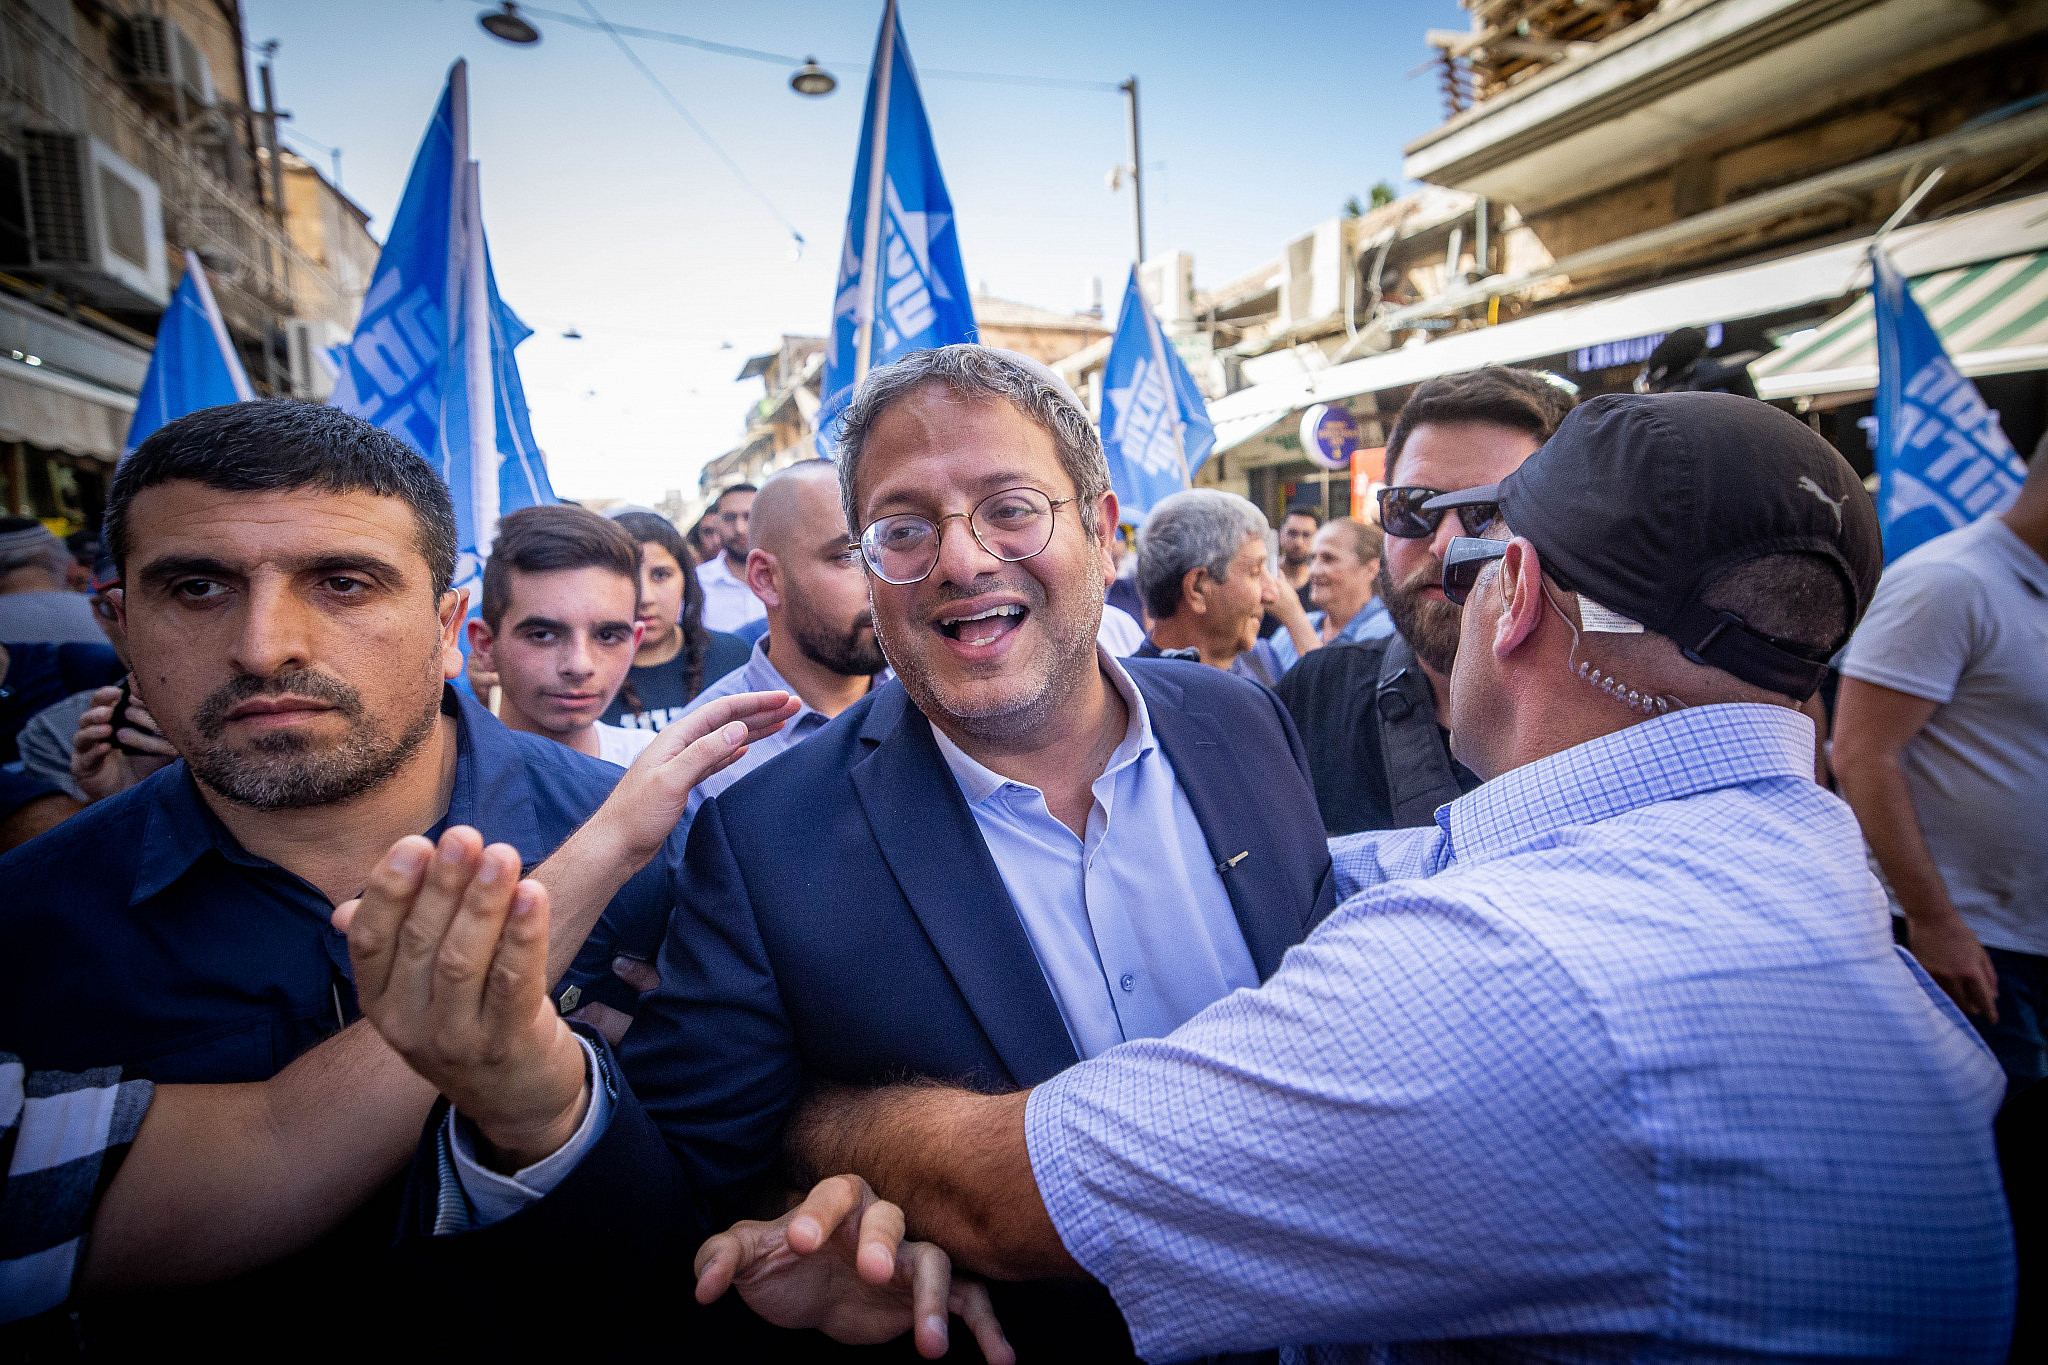 MK Itamar Ben Gvir of the far right Otzma Yehudit party tours at the Mahane Yehuda market in Jerusalem, September 30, 2022. (Yonatan Sindel/Flash90)